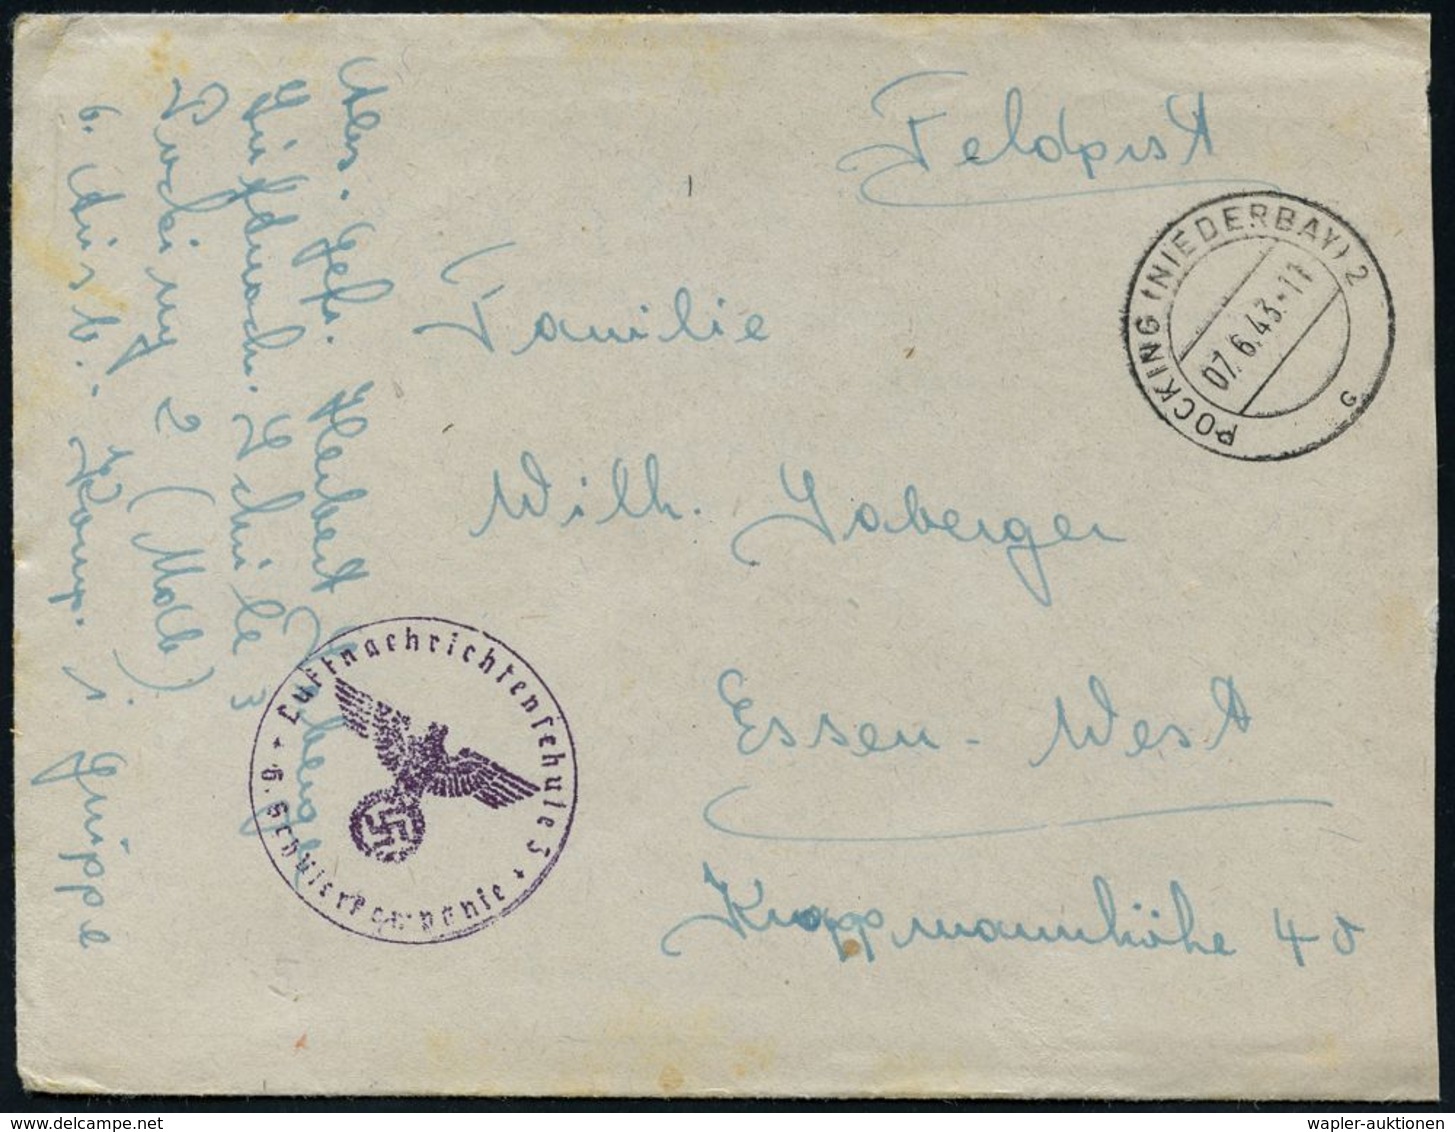 LUFTWAFFEN-FLUGSCHULEN & AKADEMIEN : POCKING (NIEDERBAY) 2/ C #bzw.# B 1941/43 3 Verschiedene Briefstempel Der Luftnachr - Flugzeuge